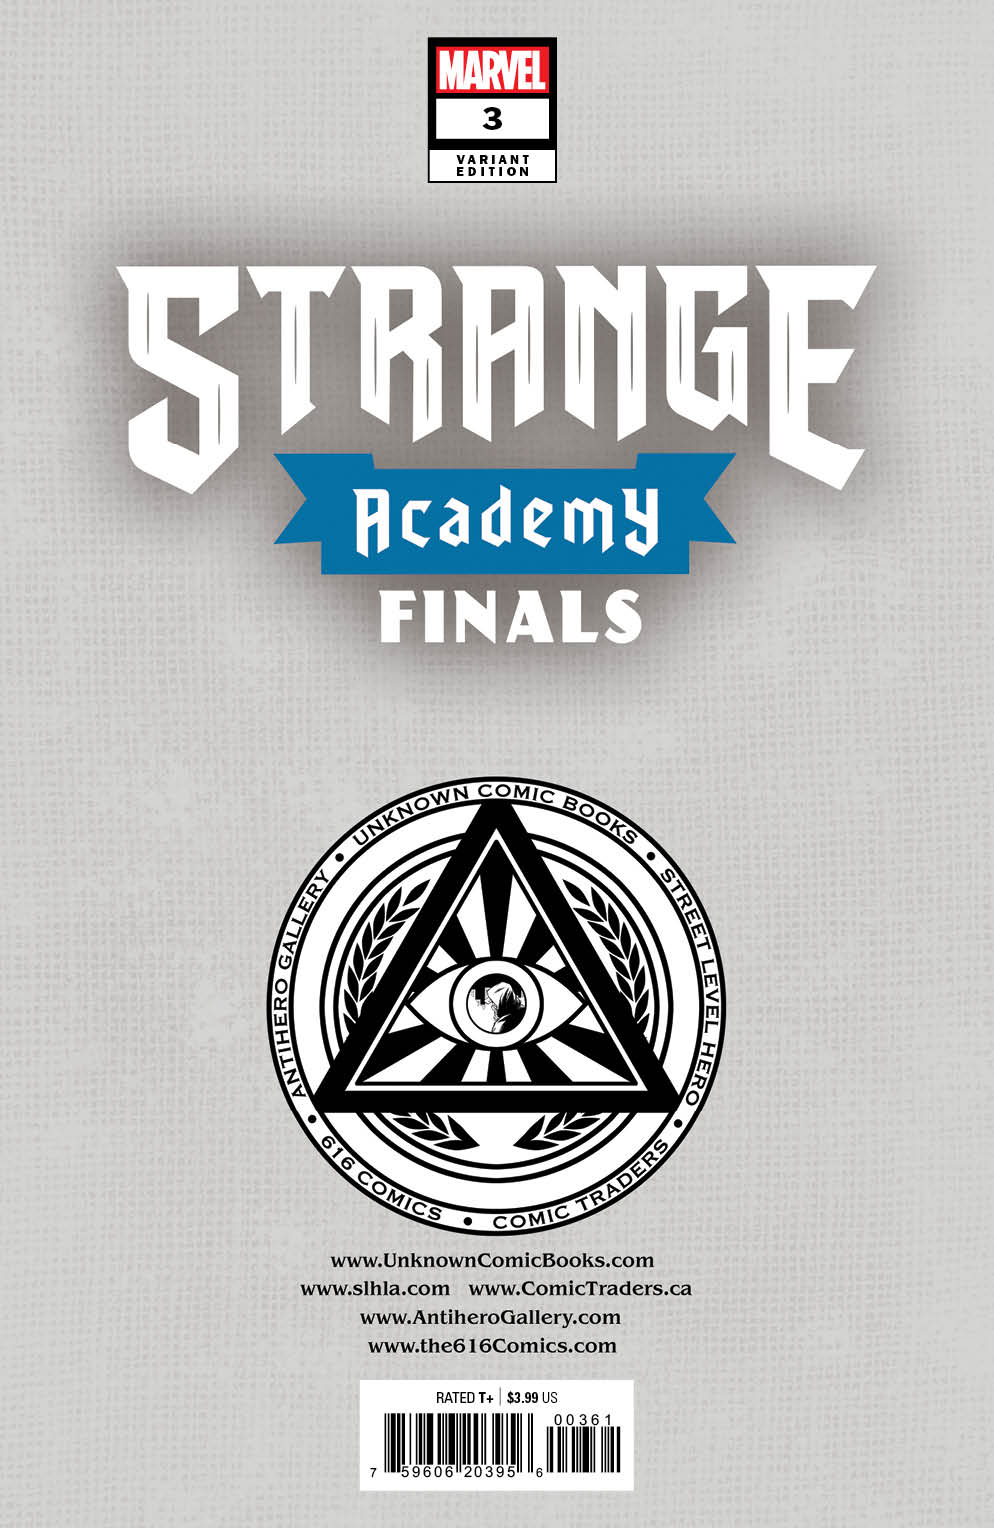 Strange Academy Finals #3 (12/28/22)